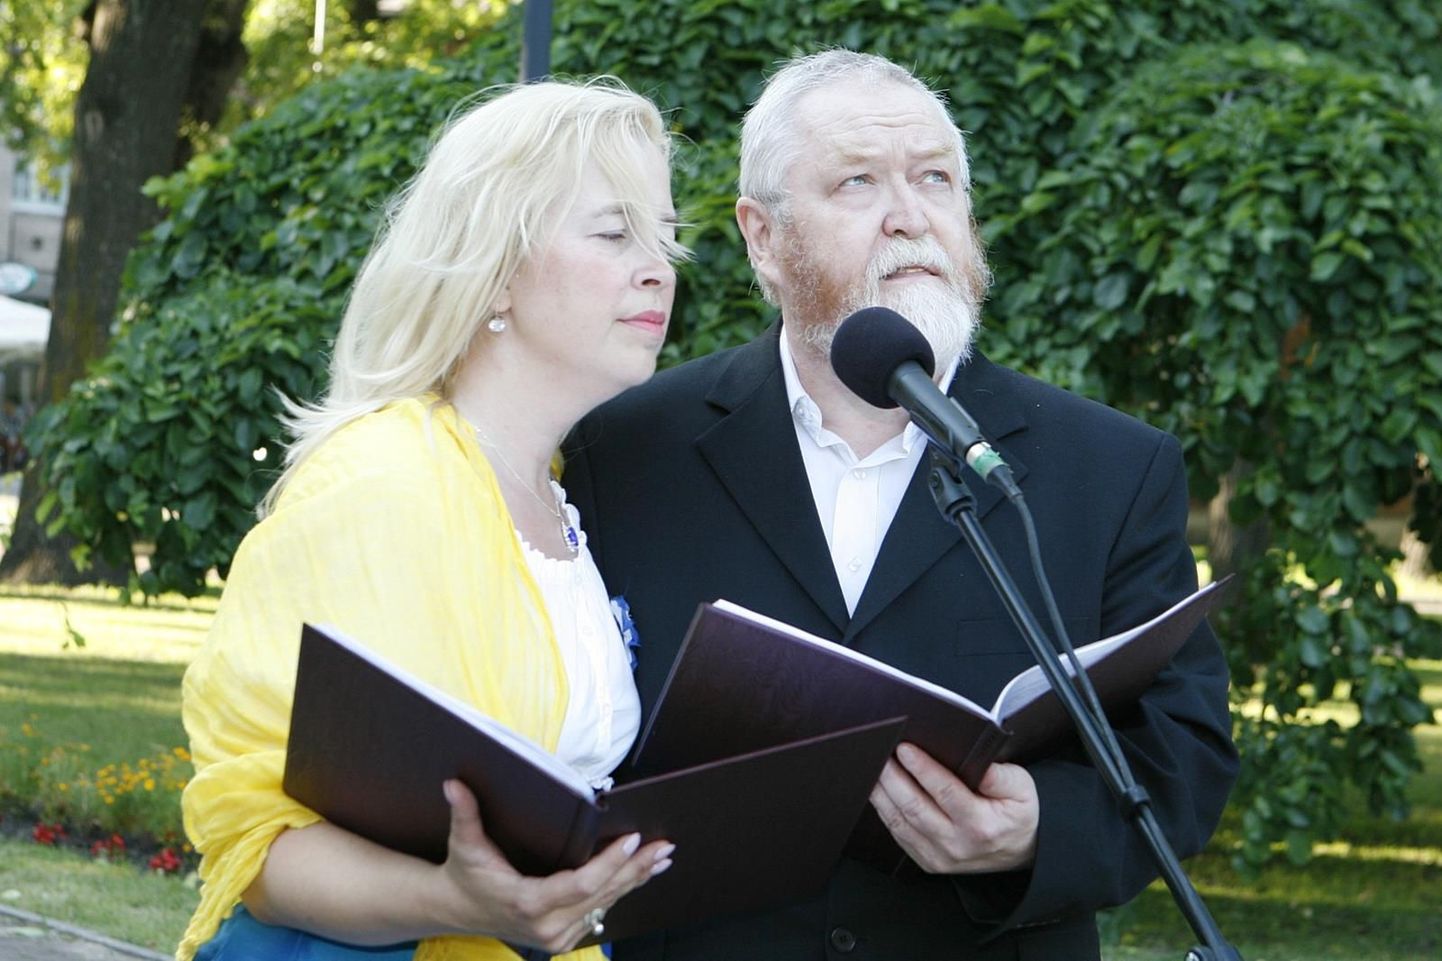 Noored armunud Kersti Merilaas (Krista Nõmm) ja August Sang (Jaak Känd) luuleetenduses "Kohtumised pargis".